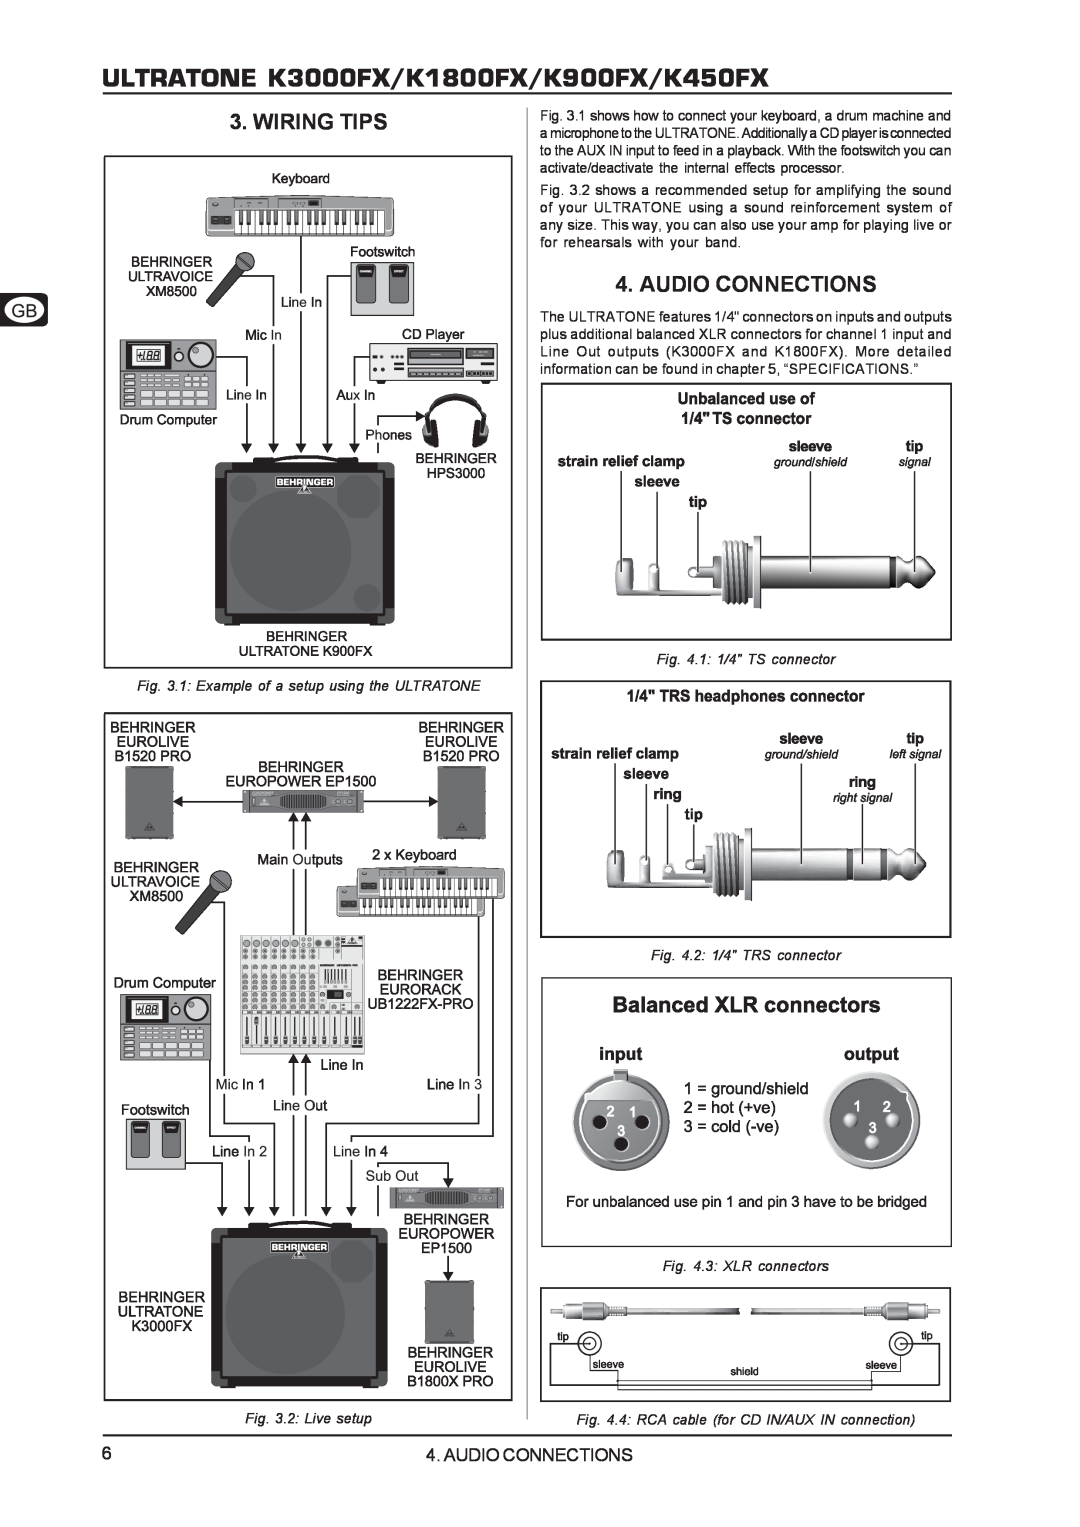 Behringer user manual Wiring Tips, Audio Connections, ULTRATONE K3000FX/K1800FX/K900FX/K450FX 